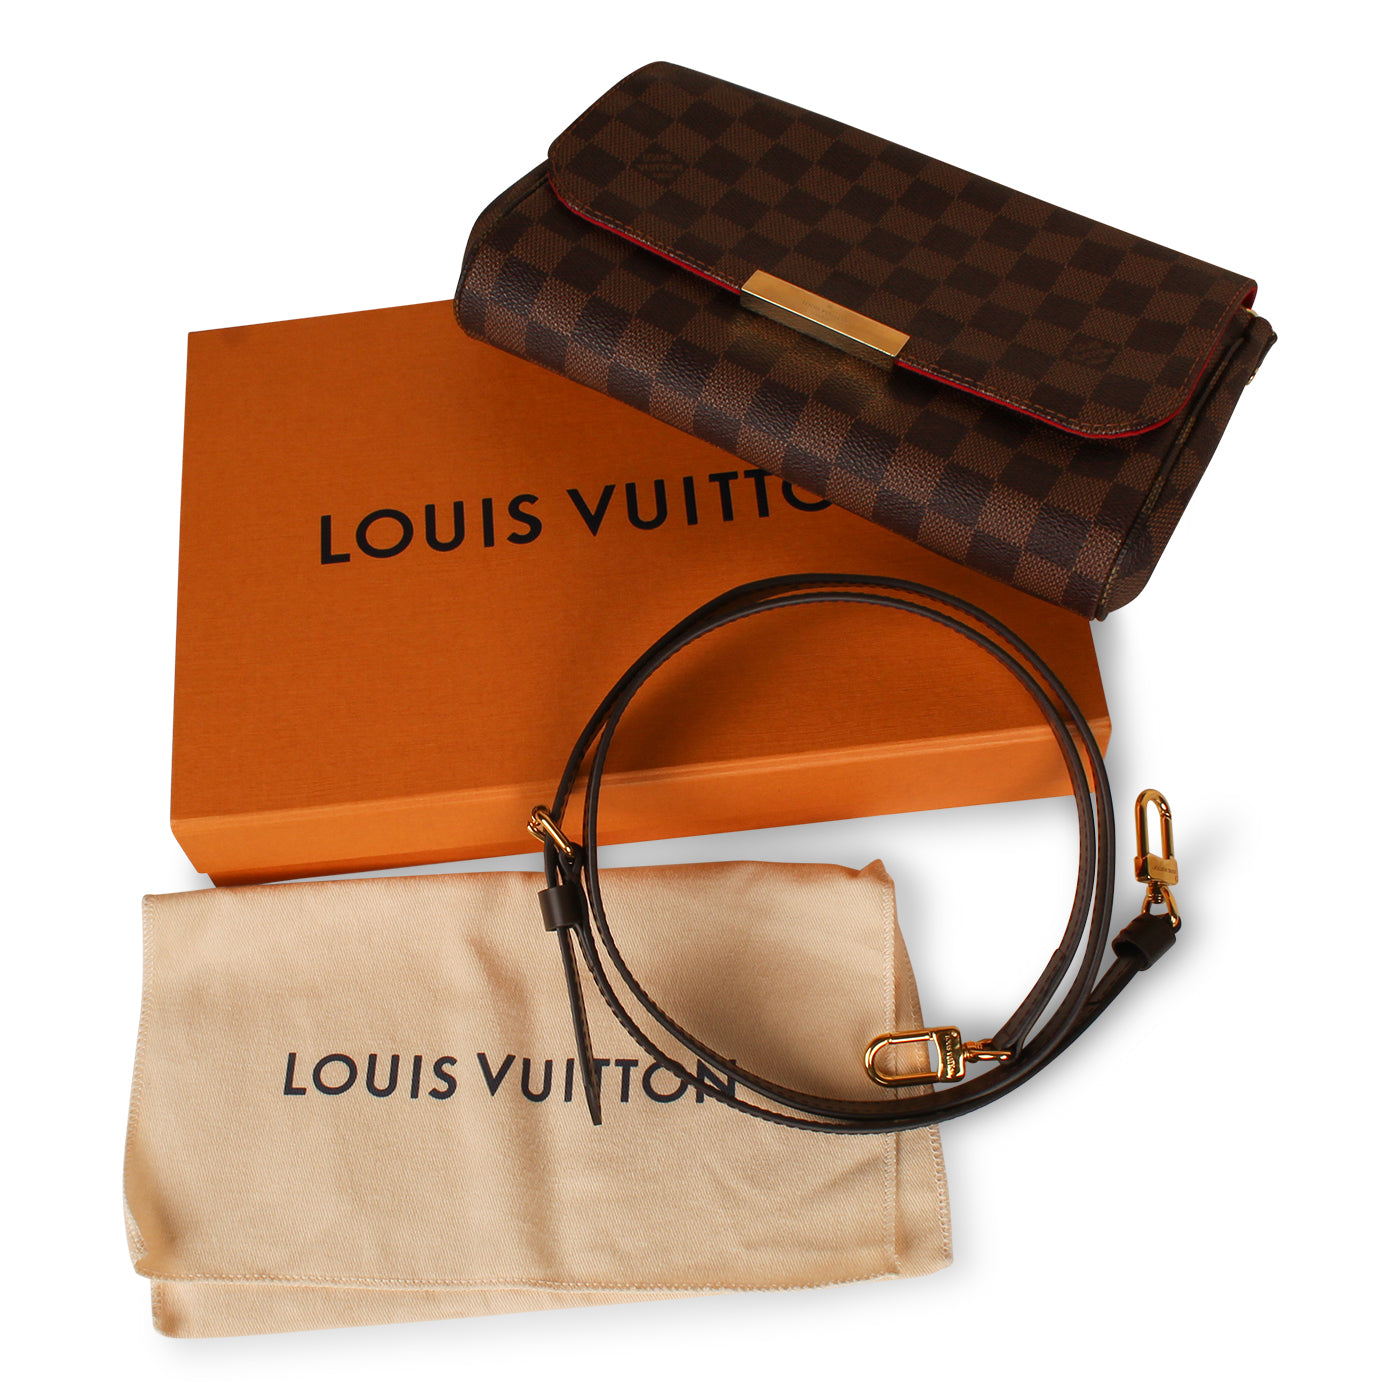 Authentic Louis Vuitton Damier Ebene Canvas Favorite MM Bag